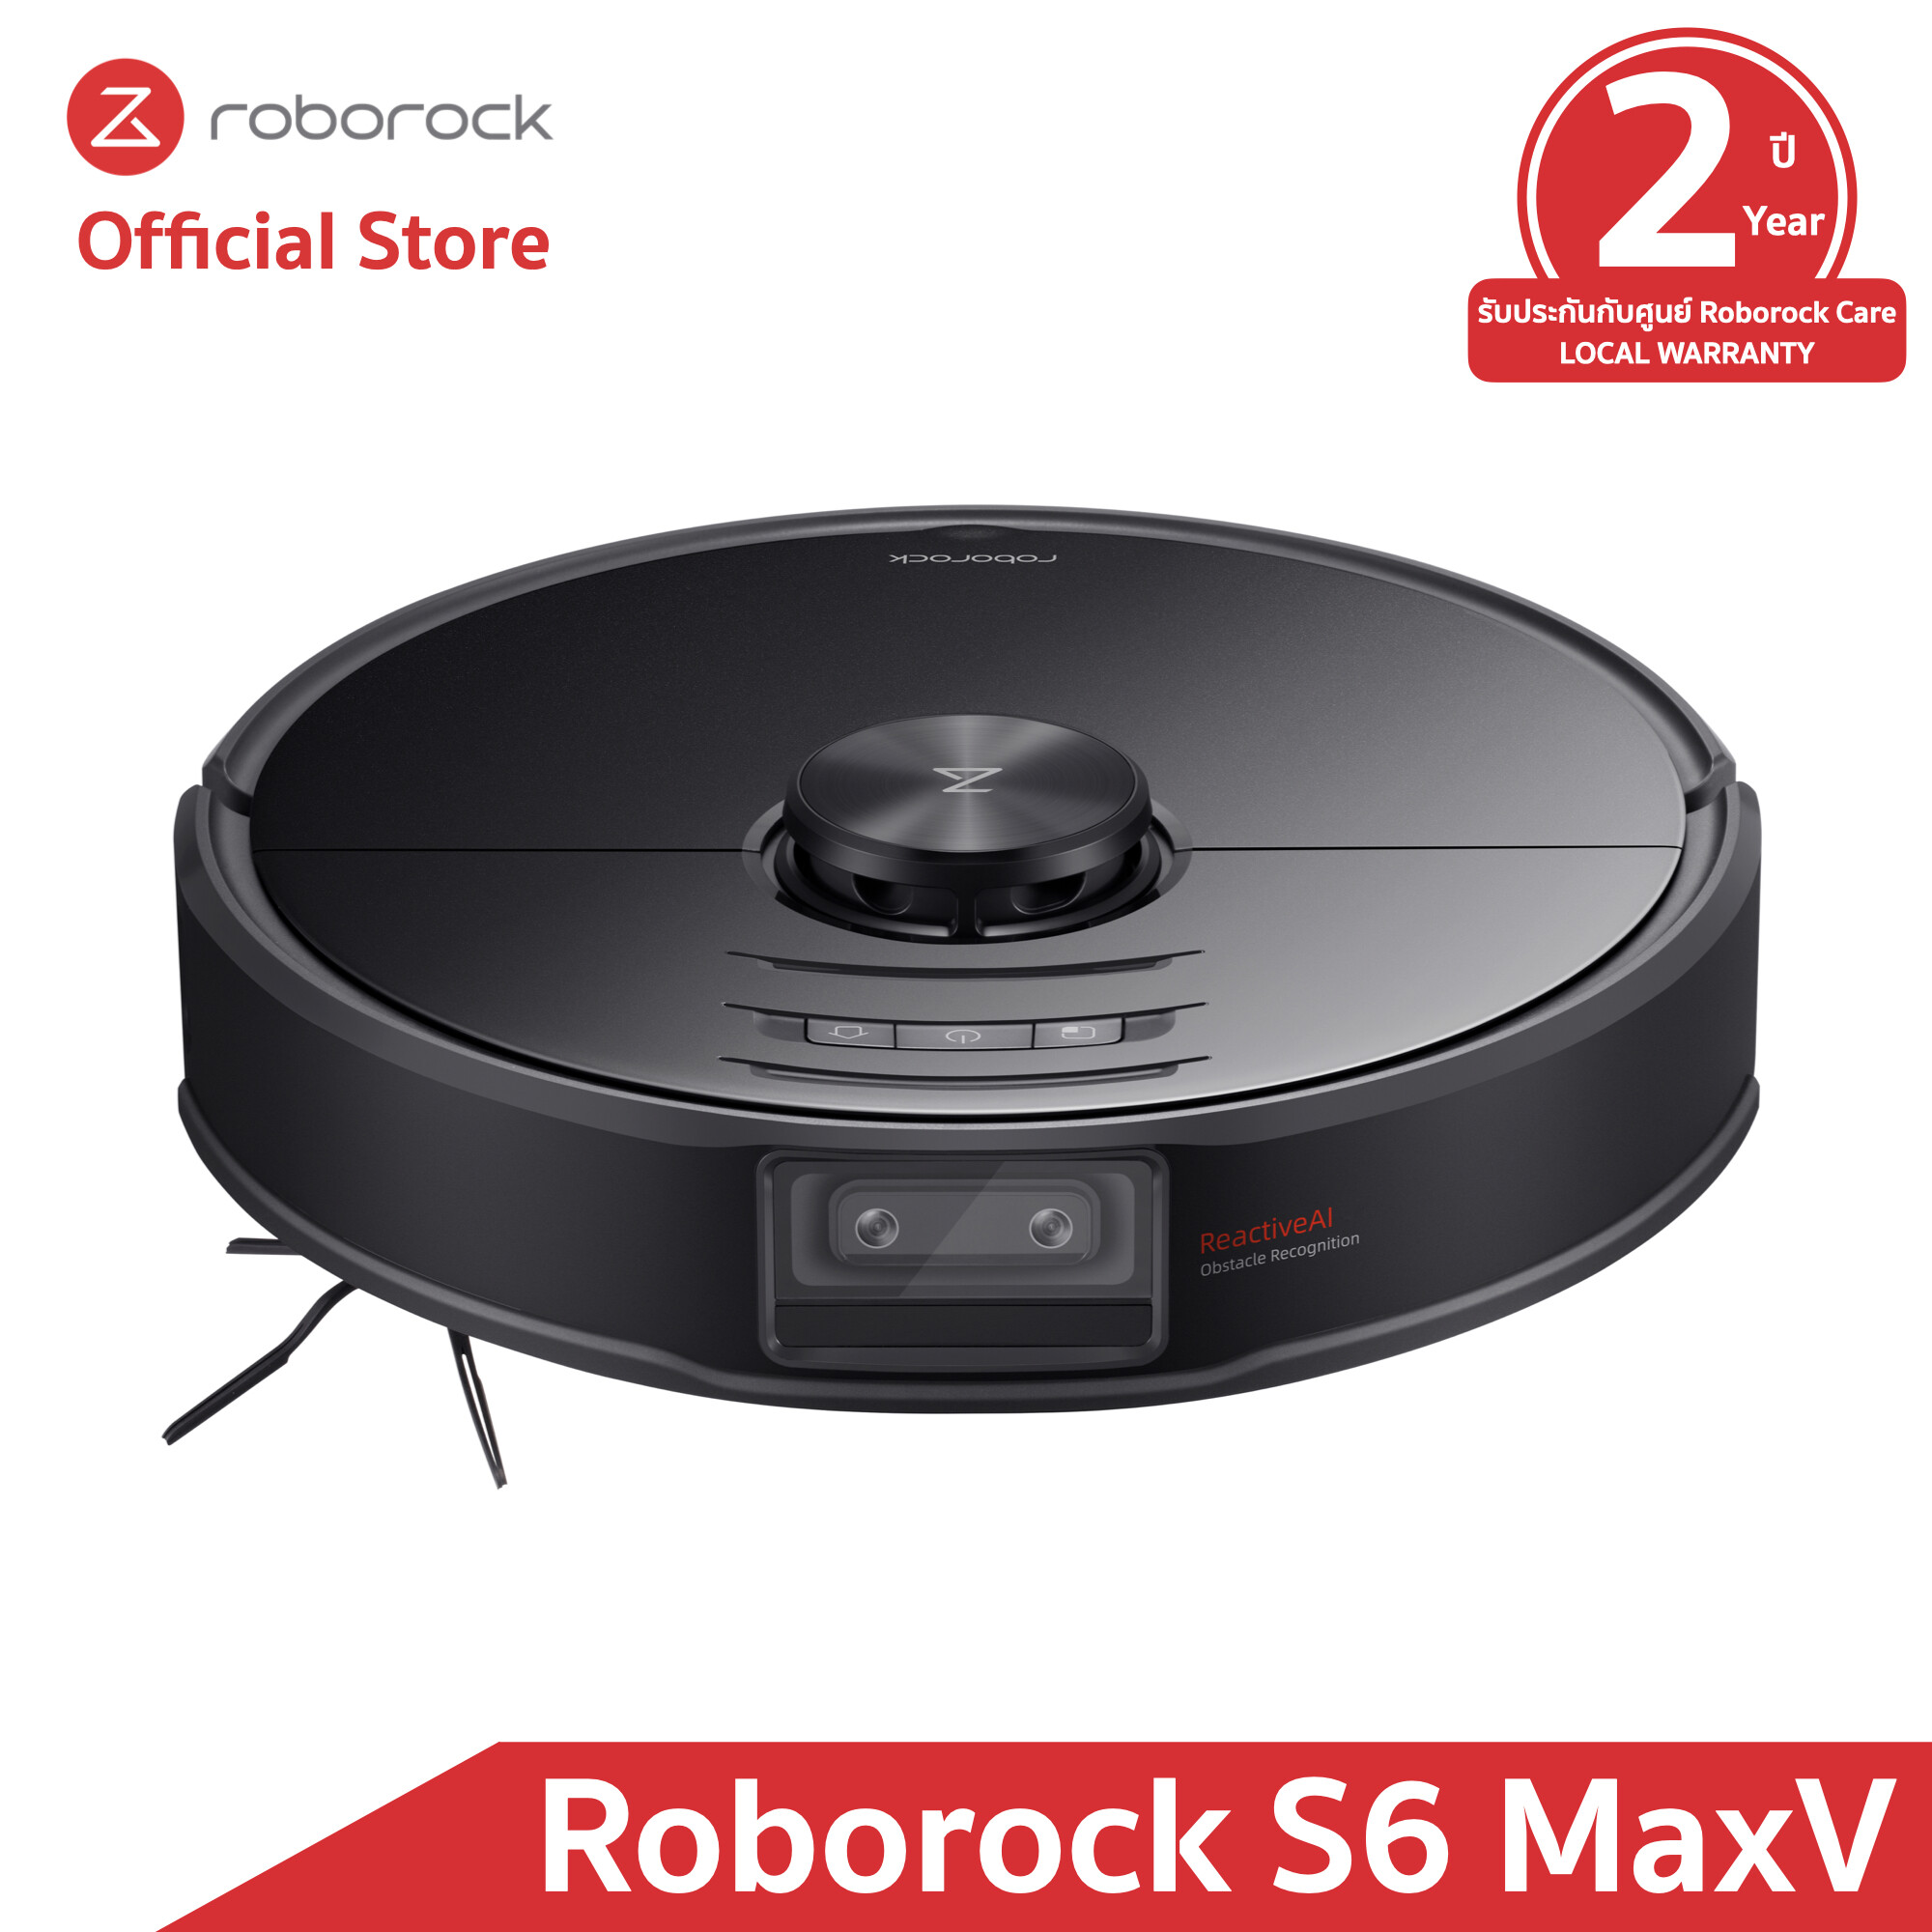 [รุ่นใหม่ล่าสุด - รับประกัน 2 ปีเต็มกับศูนย์ Roborock Care] หุ่นยนต์ดูดฝุ่นถูพื้น อัจฉริยะ โรโบร็อค Roborock S6 MaxV - Smart Robotic Vacuum and Mopping (Global Version)